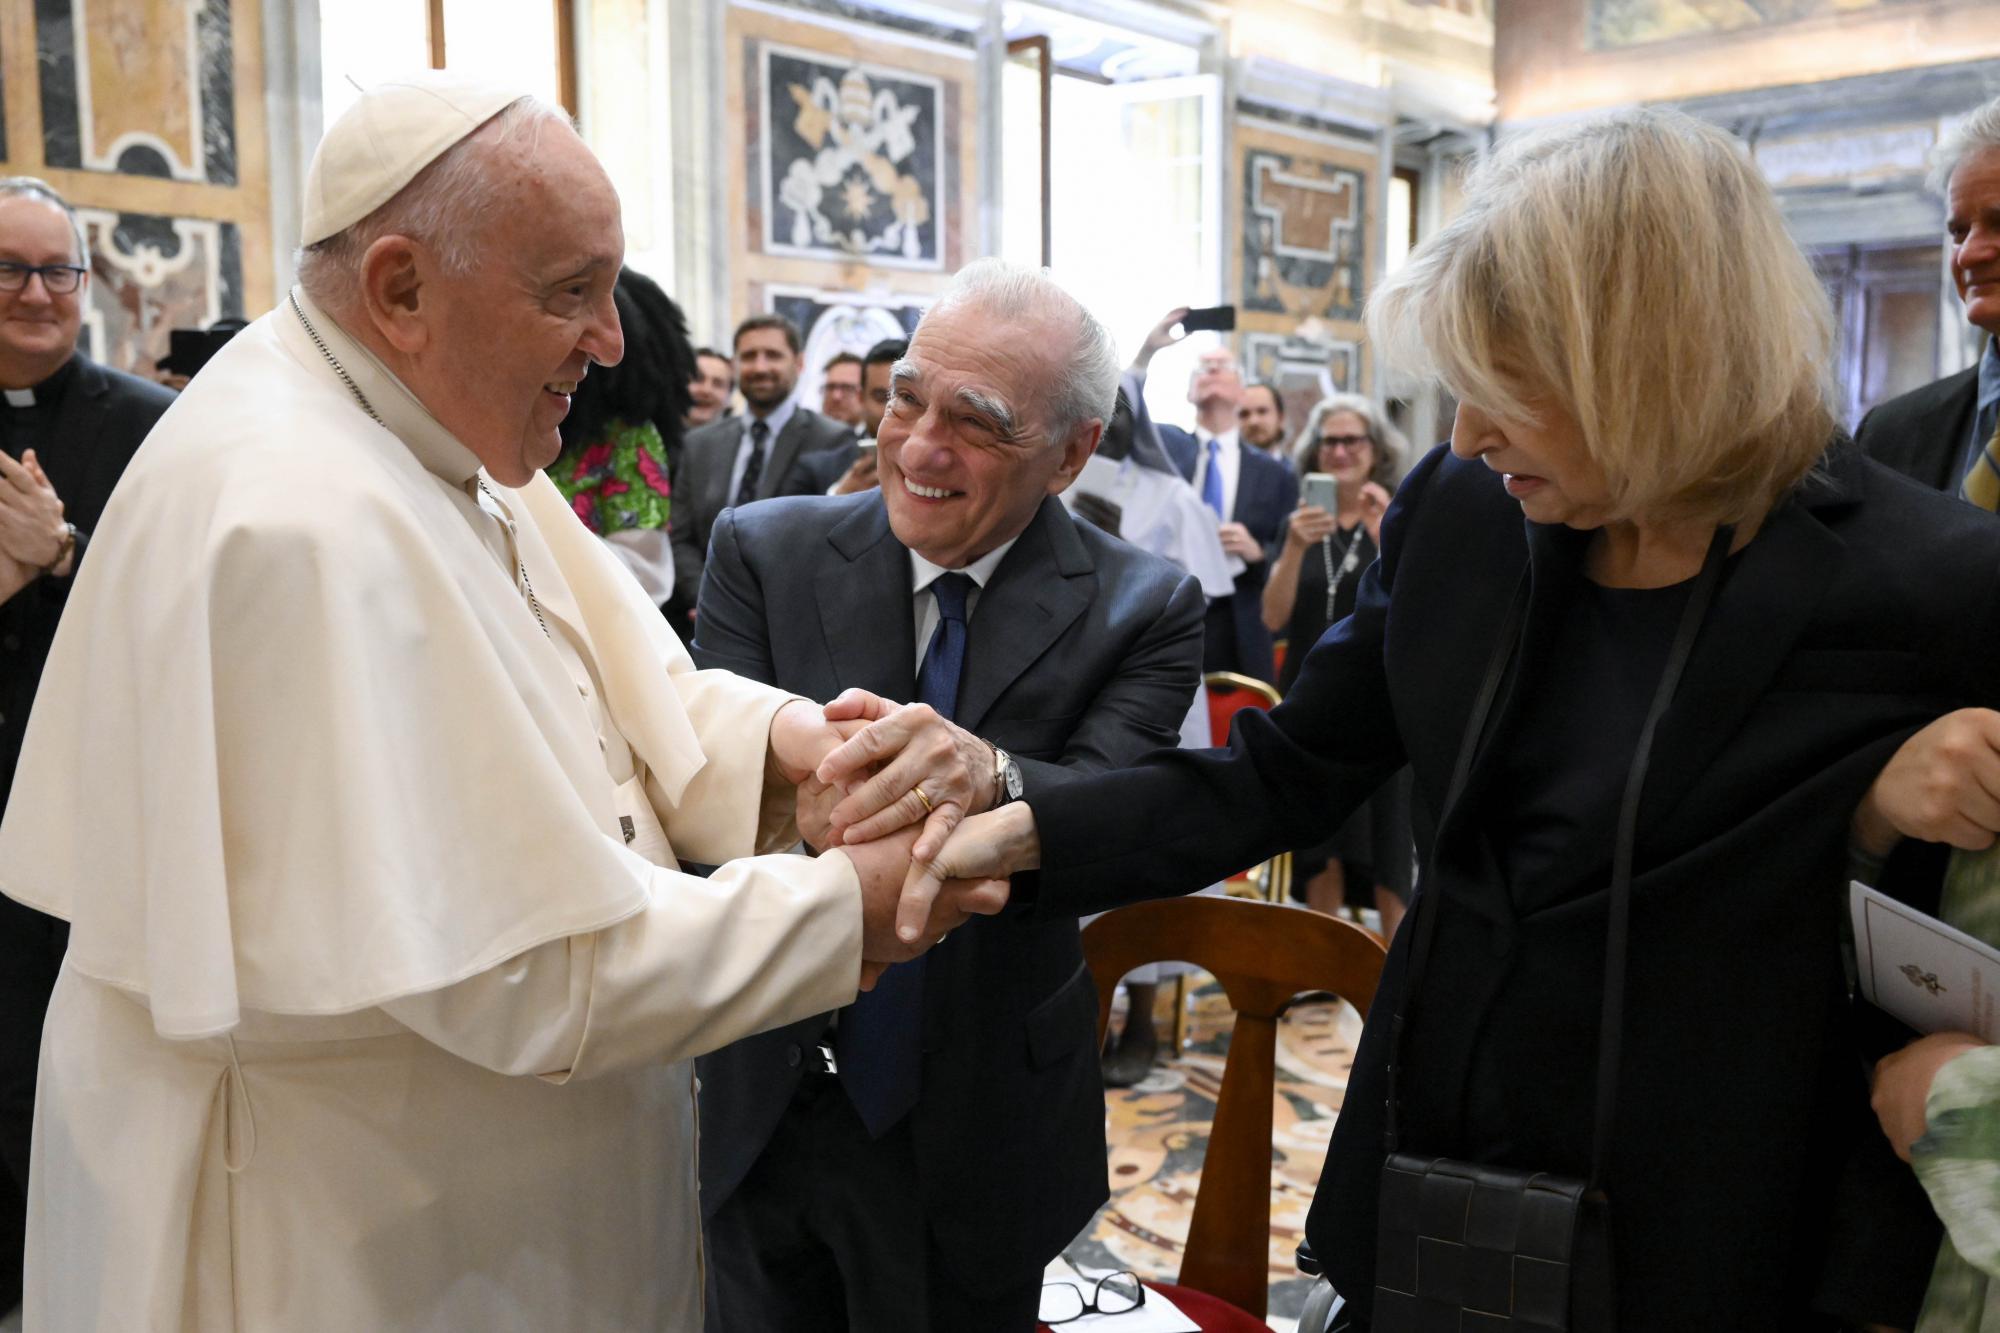 Martin Scorcese en zijn vrouw Helen Morris hadden zaterdag een ontmoeting met paus Franciscus